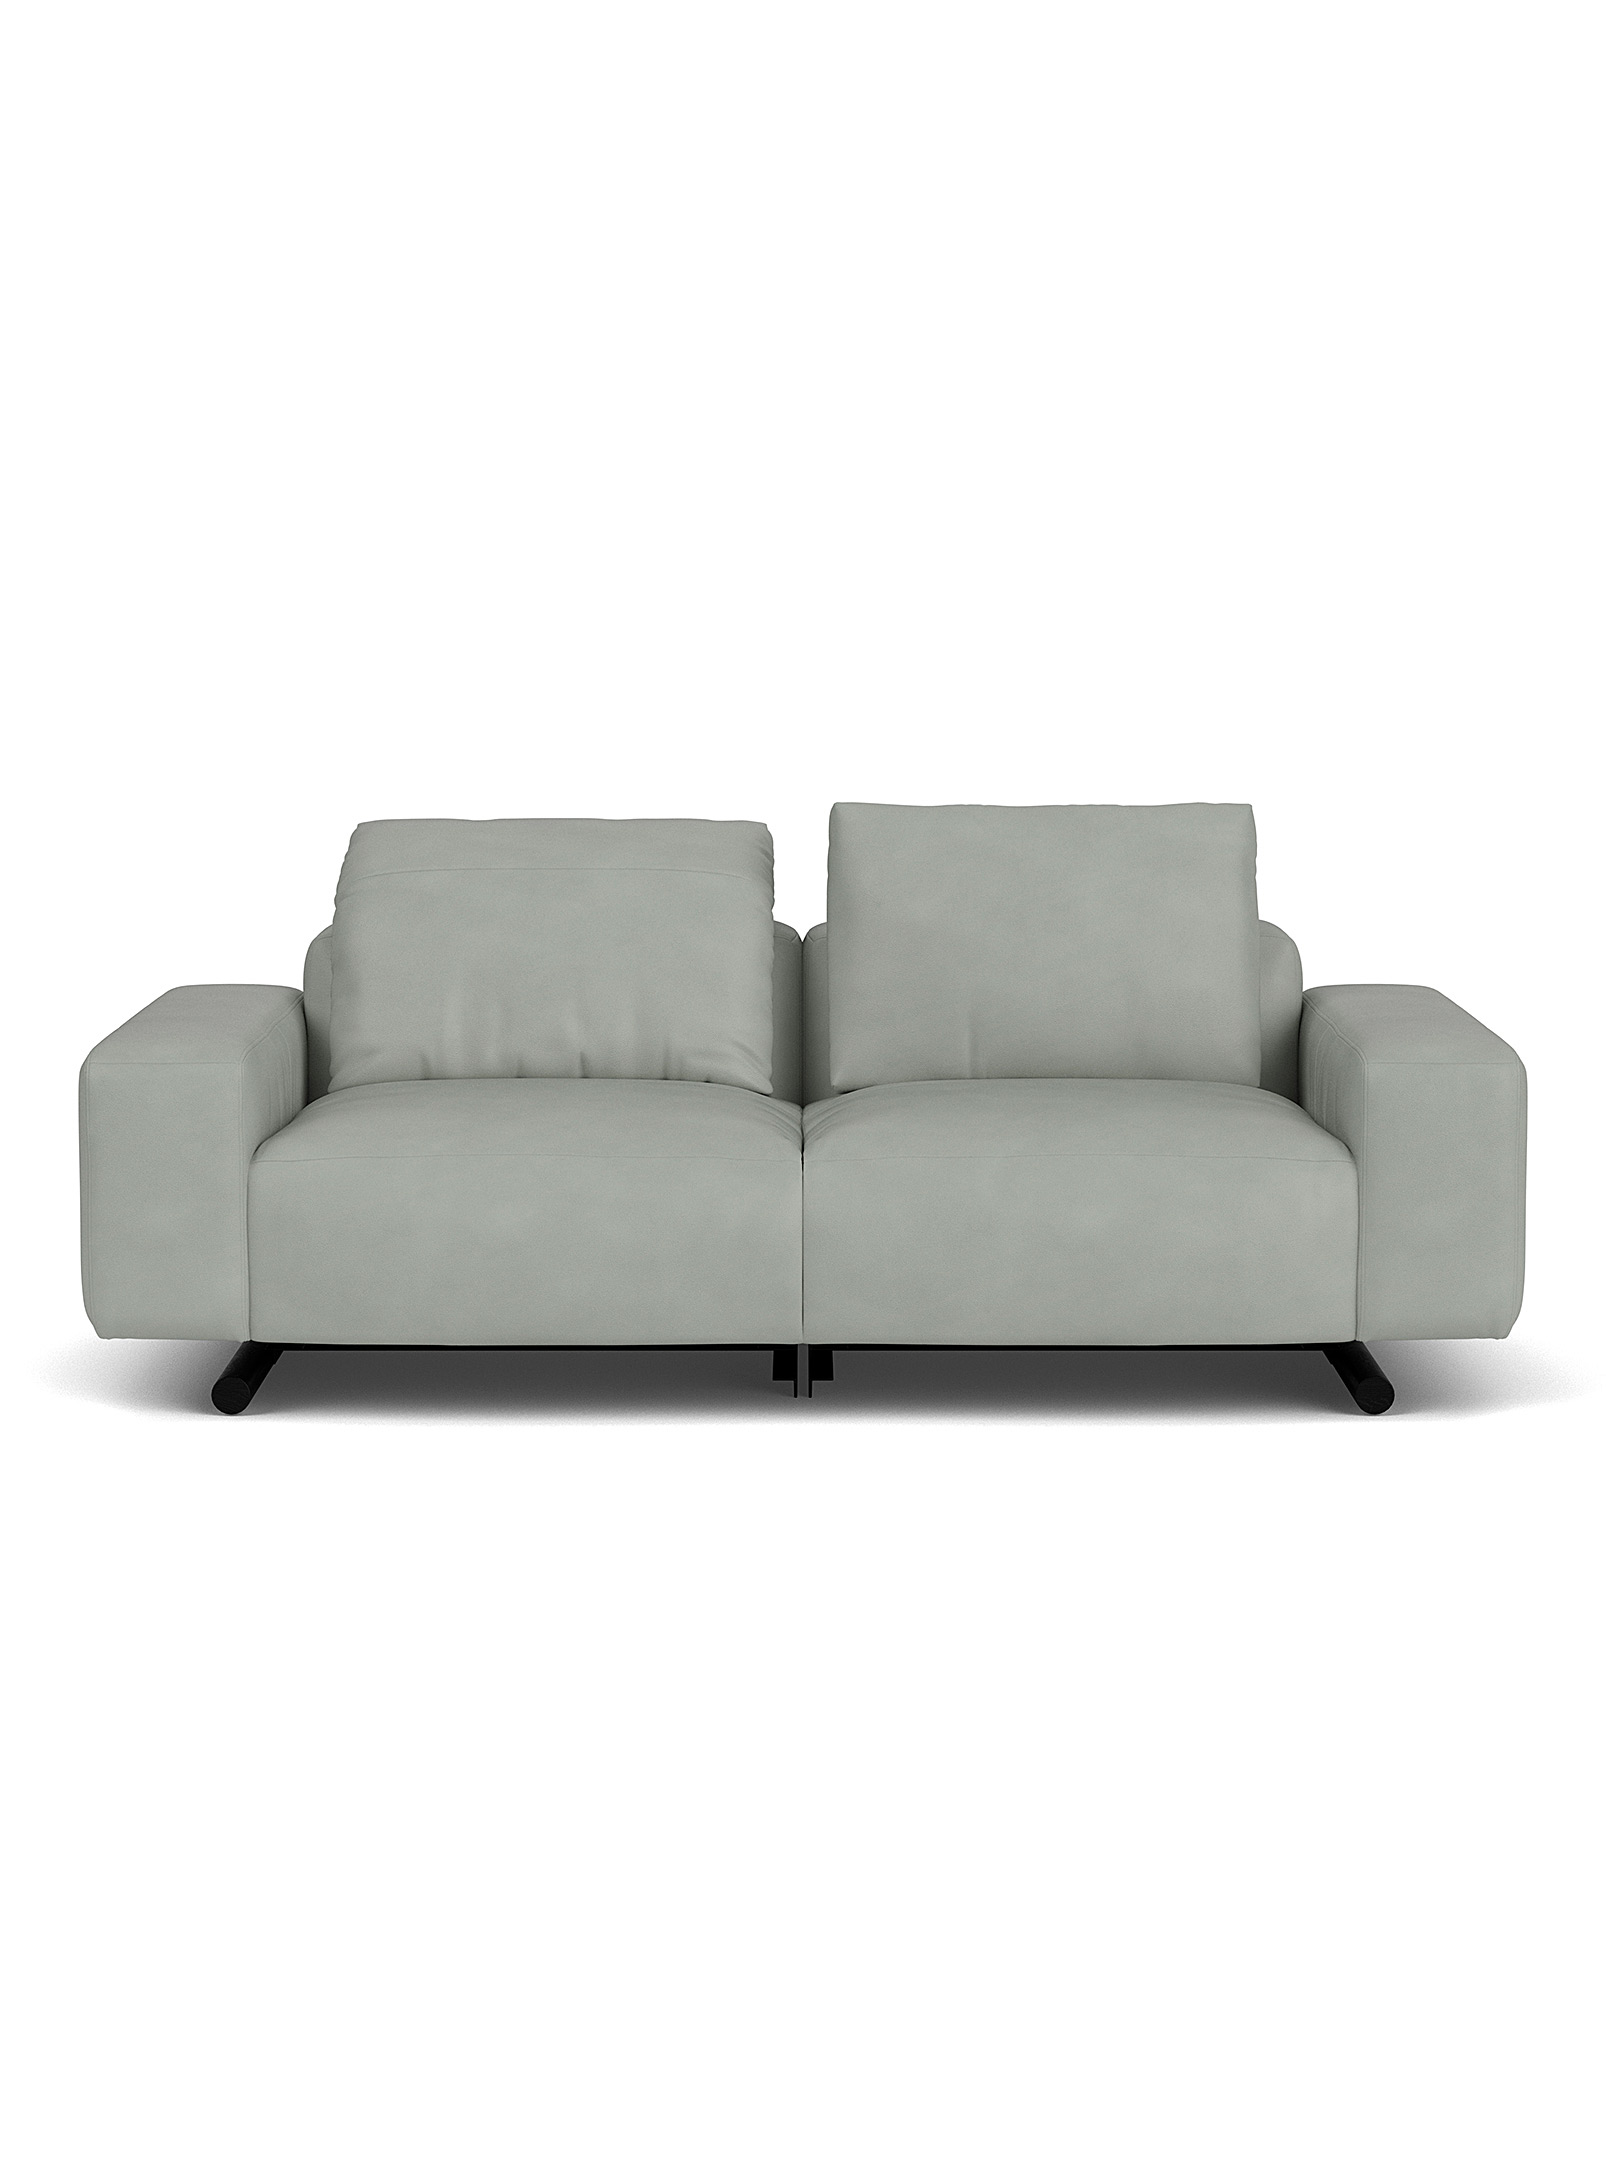 Eq3 Era Leather Reclining Modular Couch In Grey